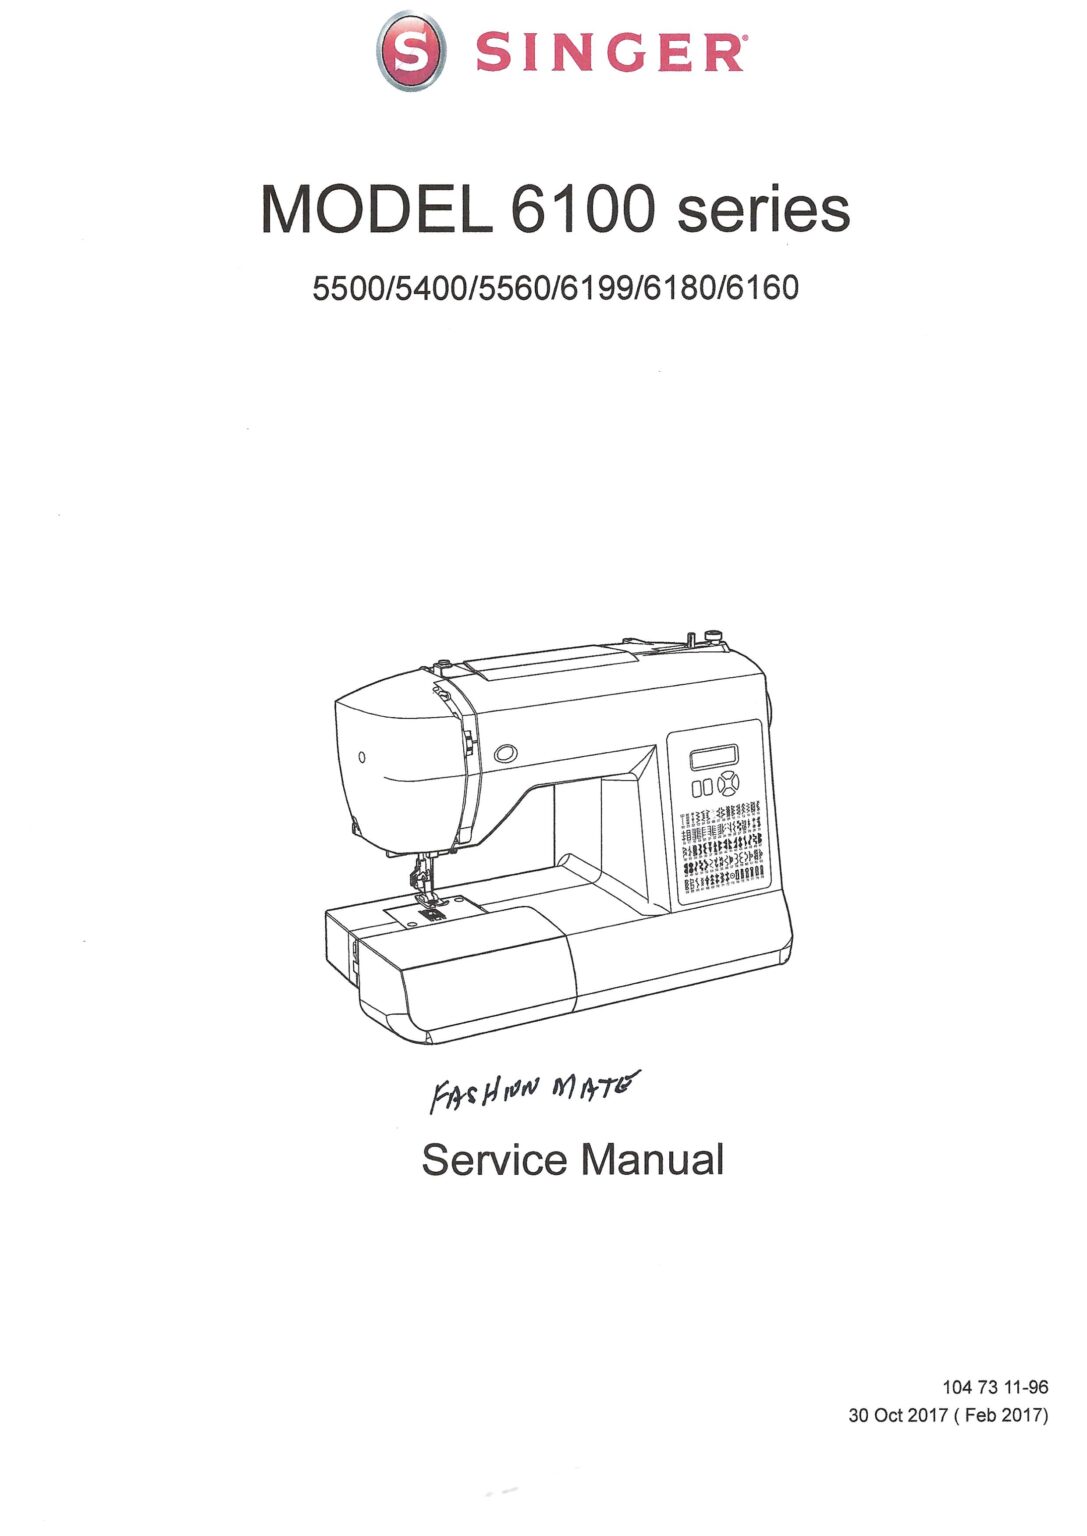 Service Manual Singer Fashion Mate 5000, 6100 Series Sewing Machine